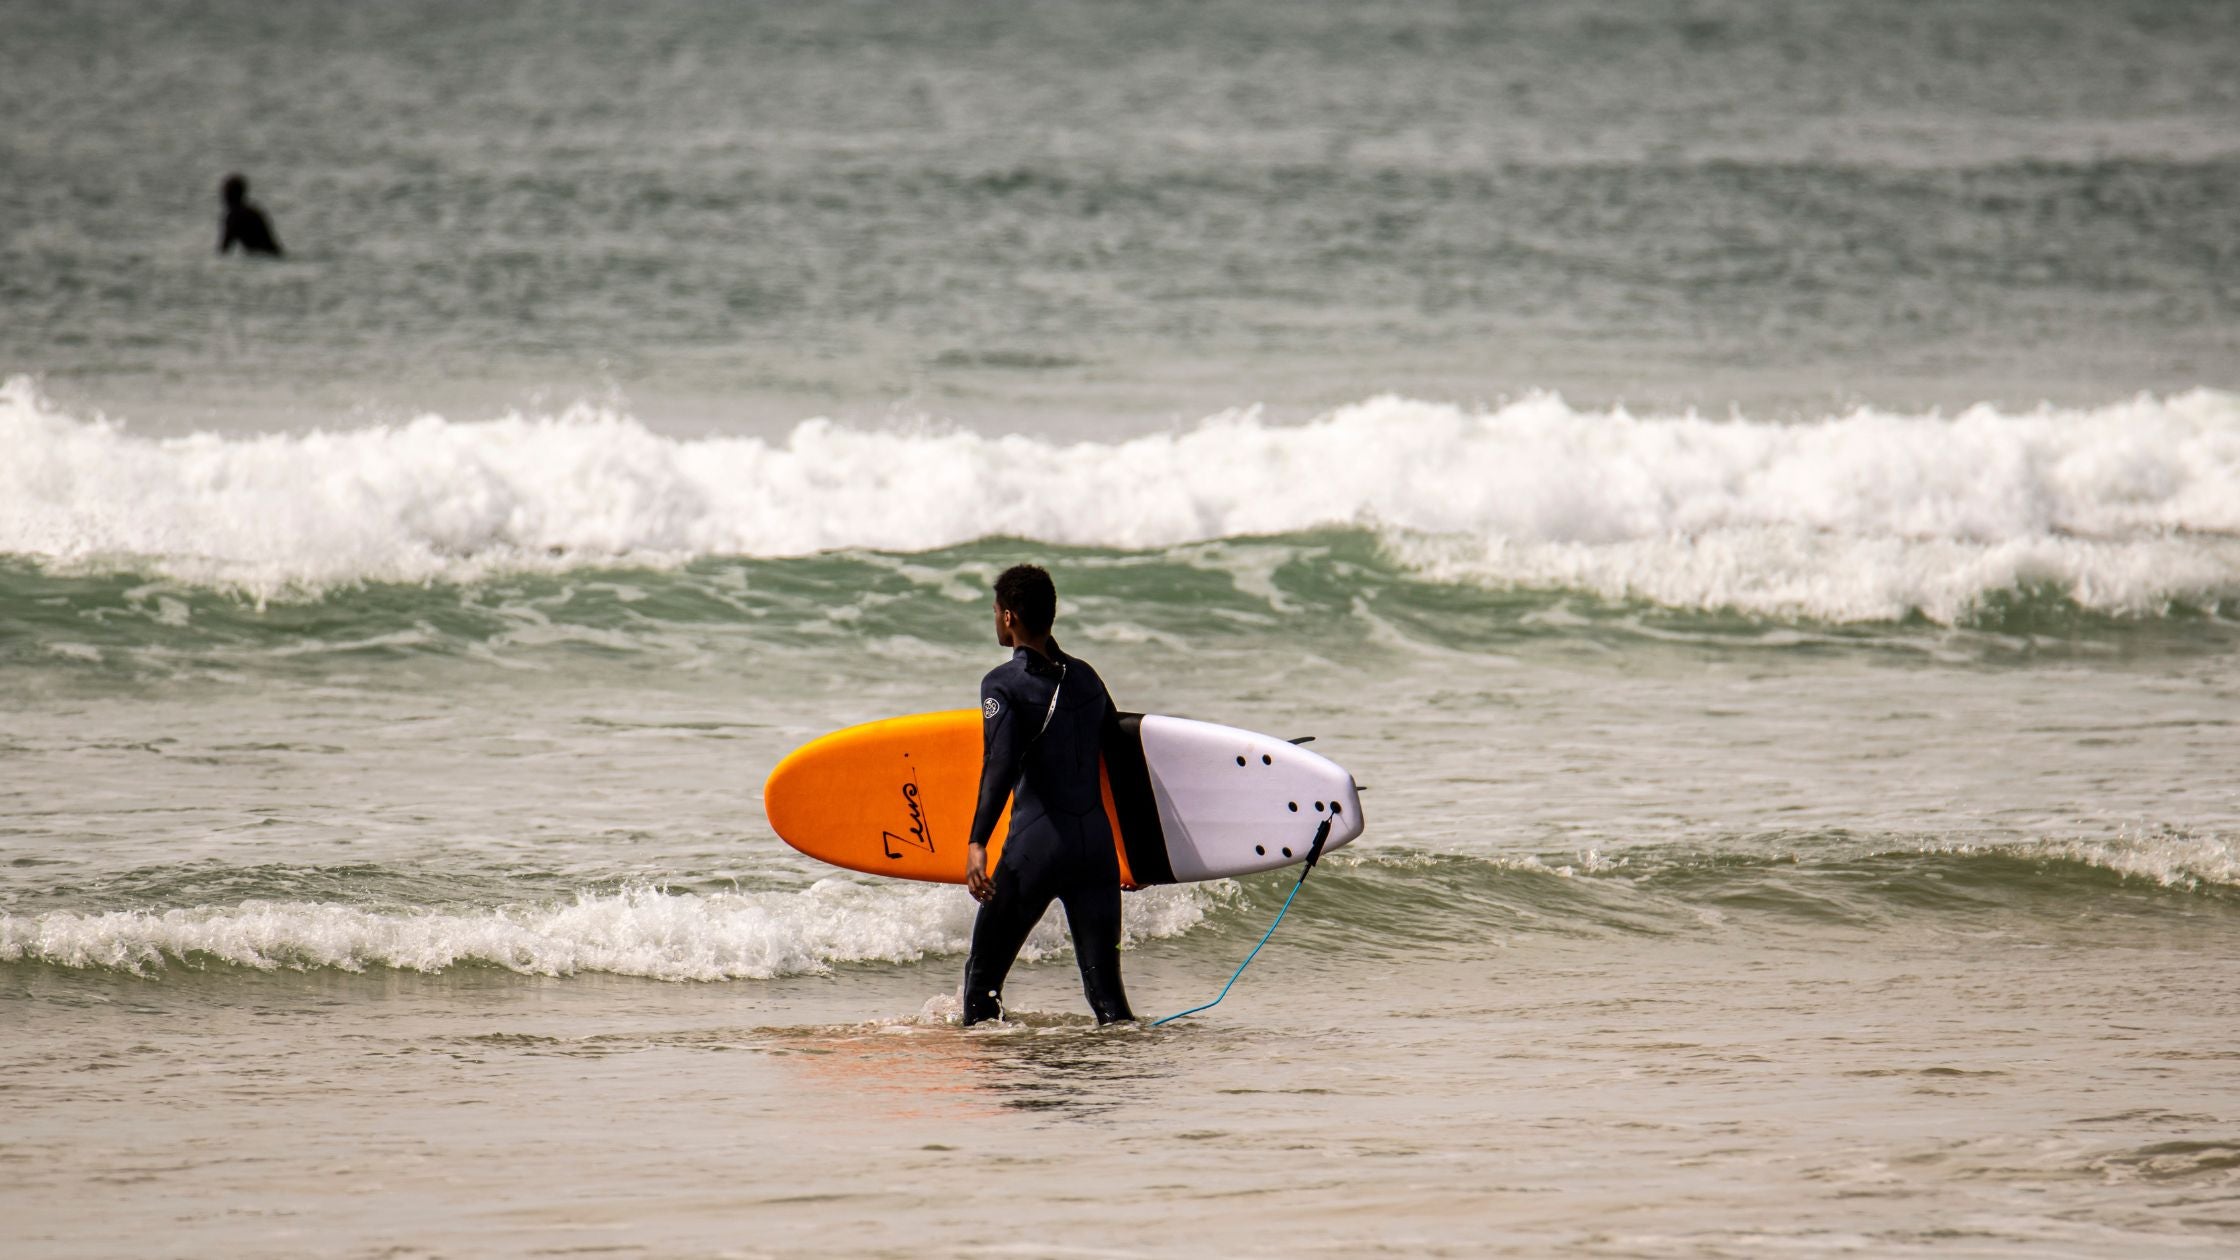 Un surfer débutant en train de se mettre à l’eau avec une planche en mousse orange